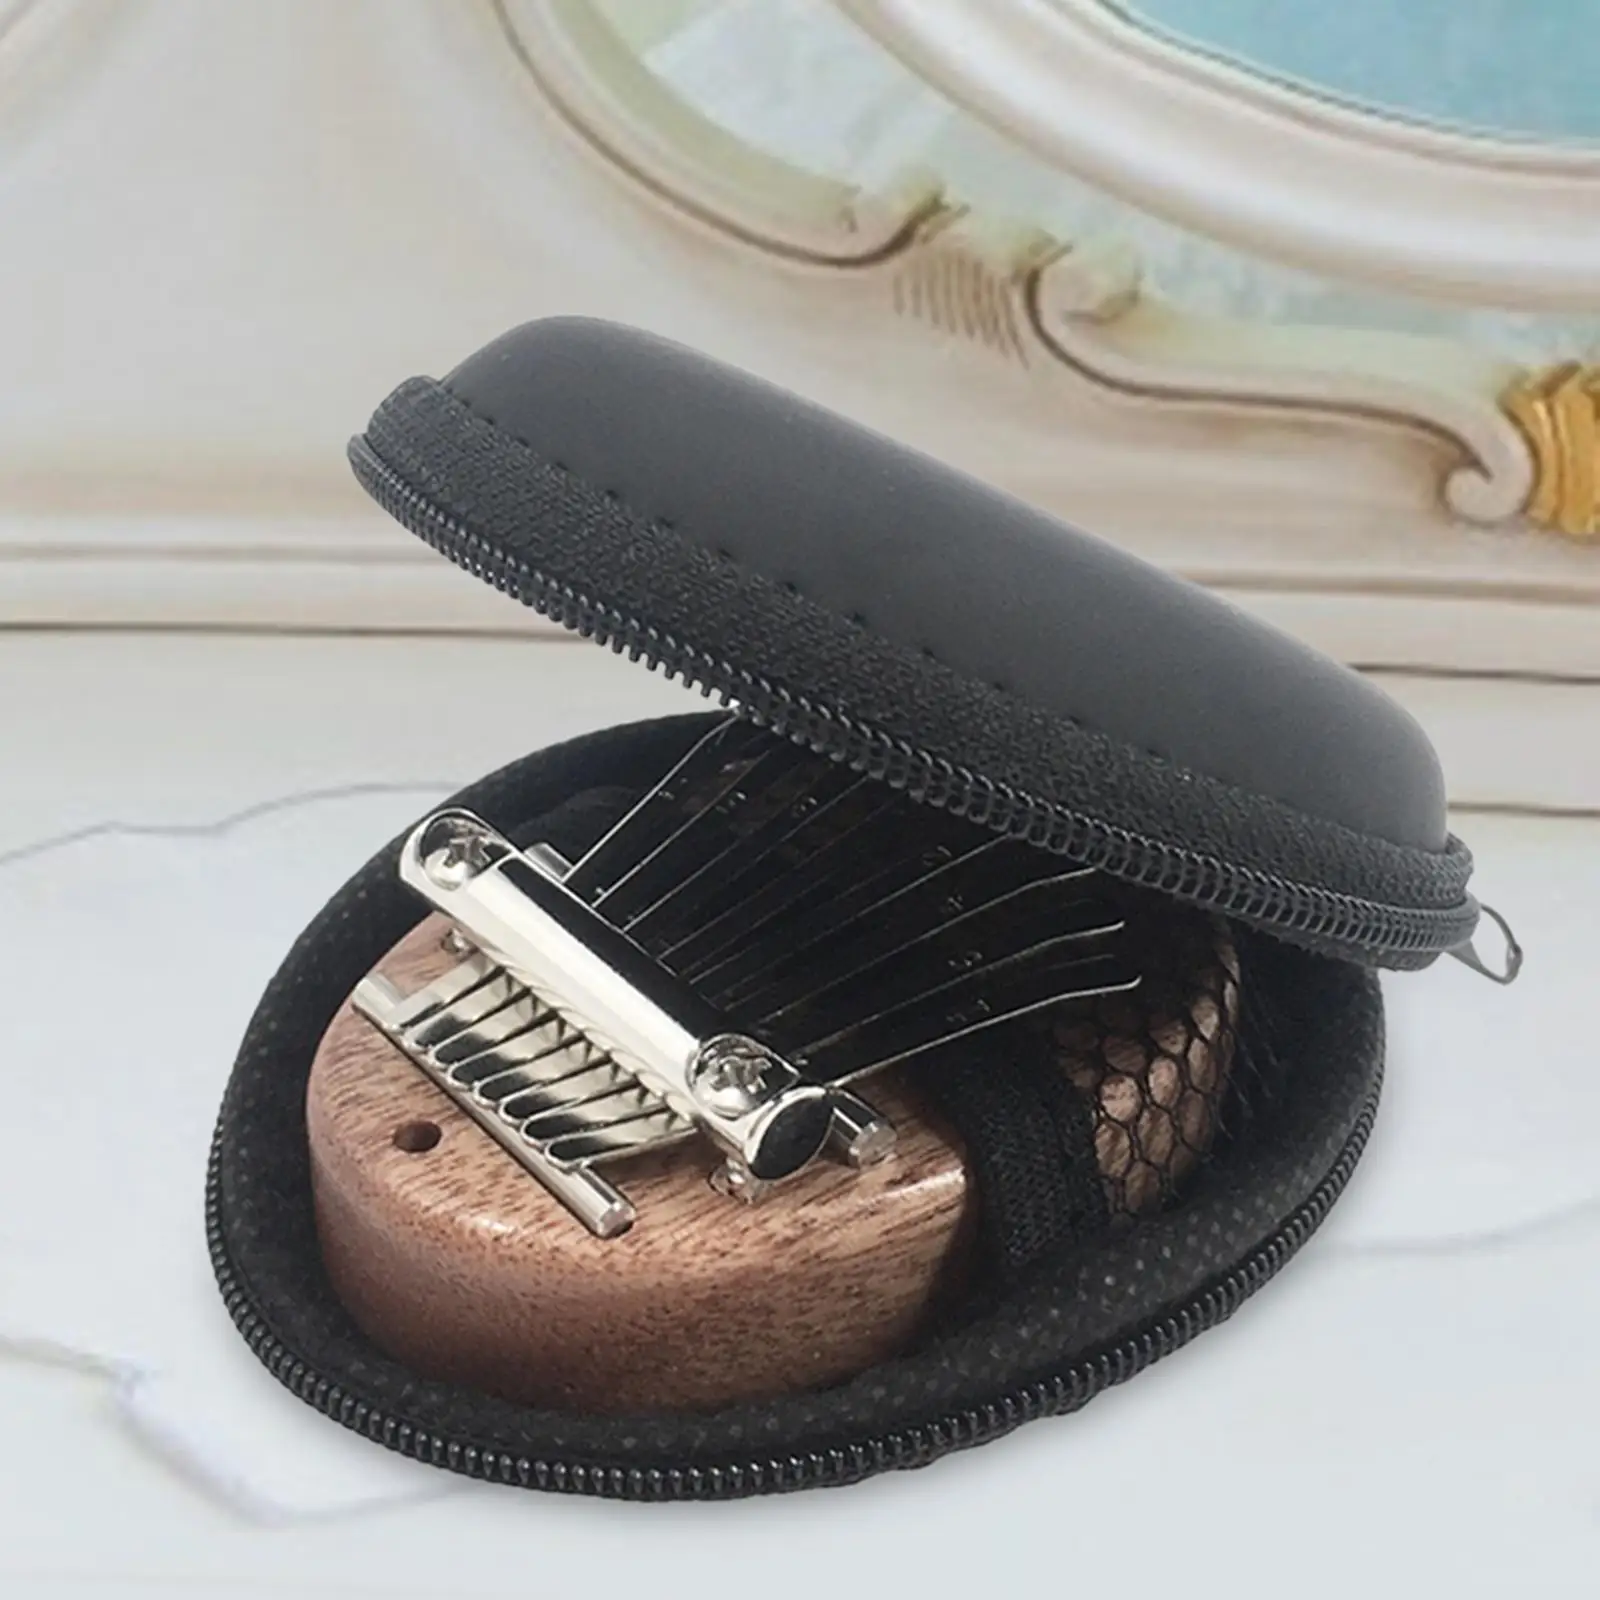 8 Keys Kalimba Case Practical Marimba Musical Protective Pouch Cover Gear